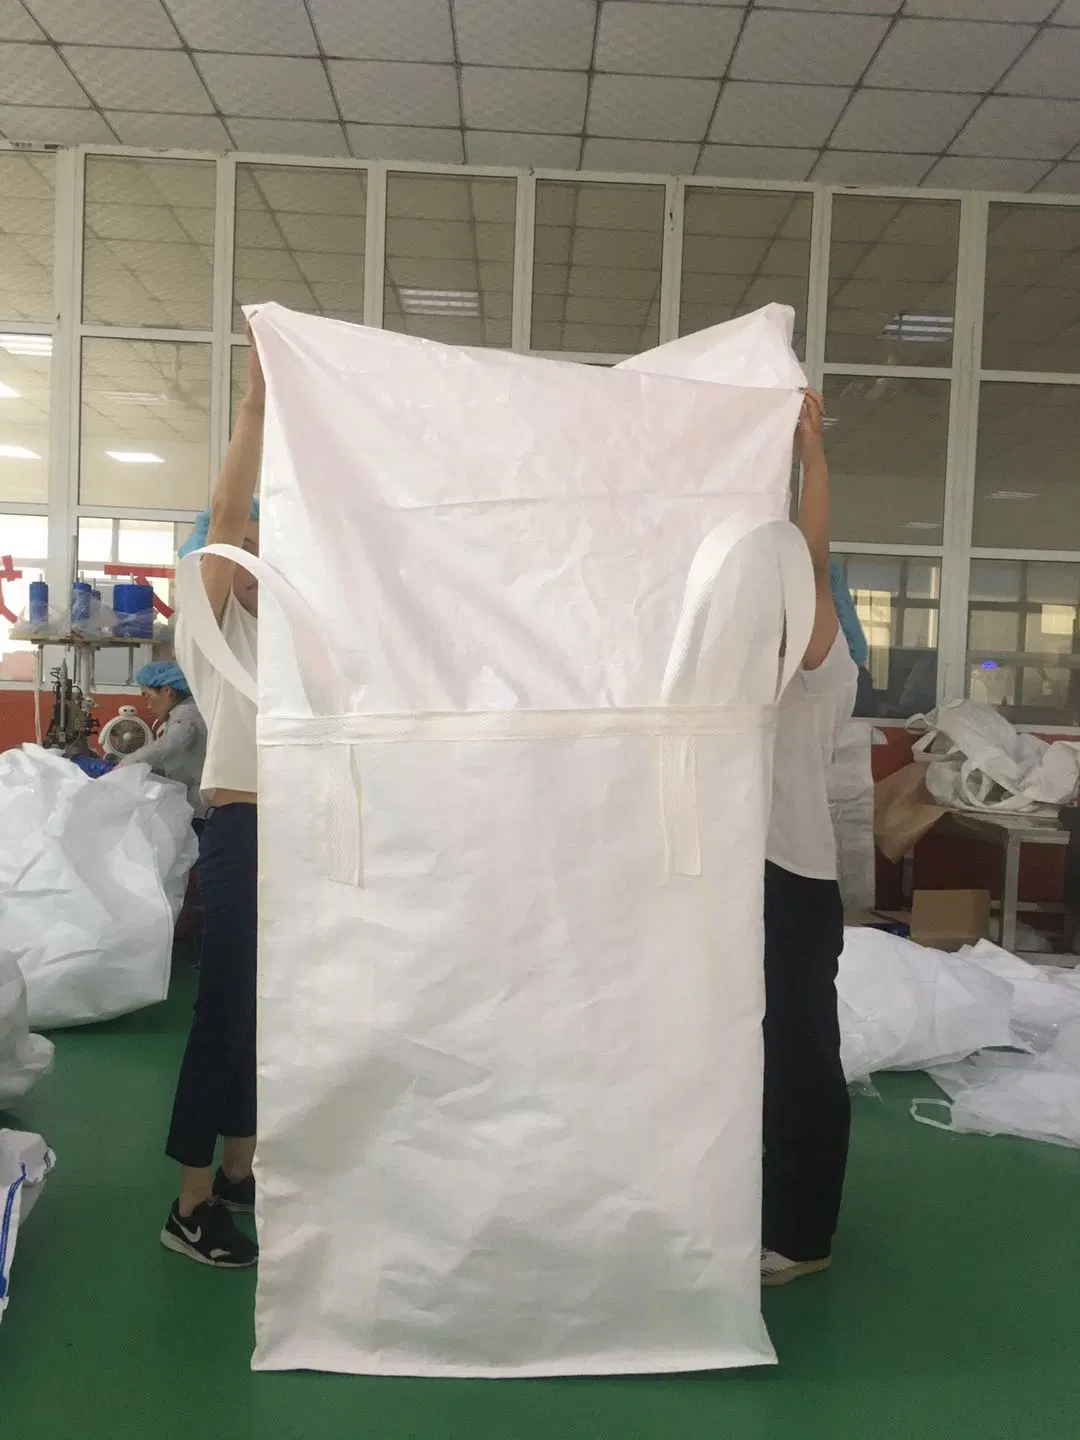 1 One Ton 1000kg Super Sacks Price Plastic PP Big Bulk Jumbo FIBC Bag with Spout